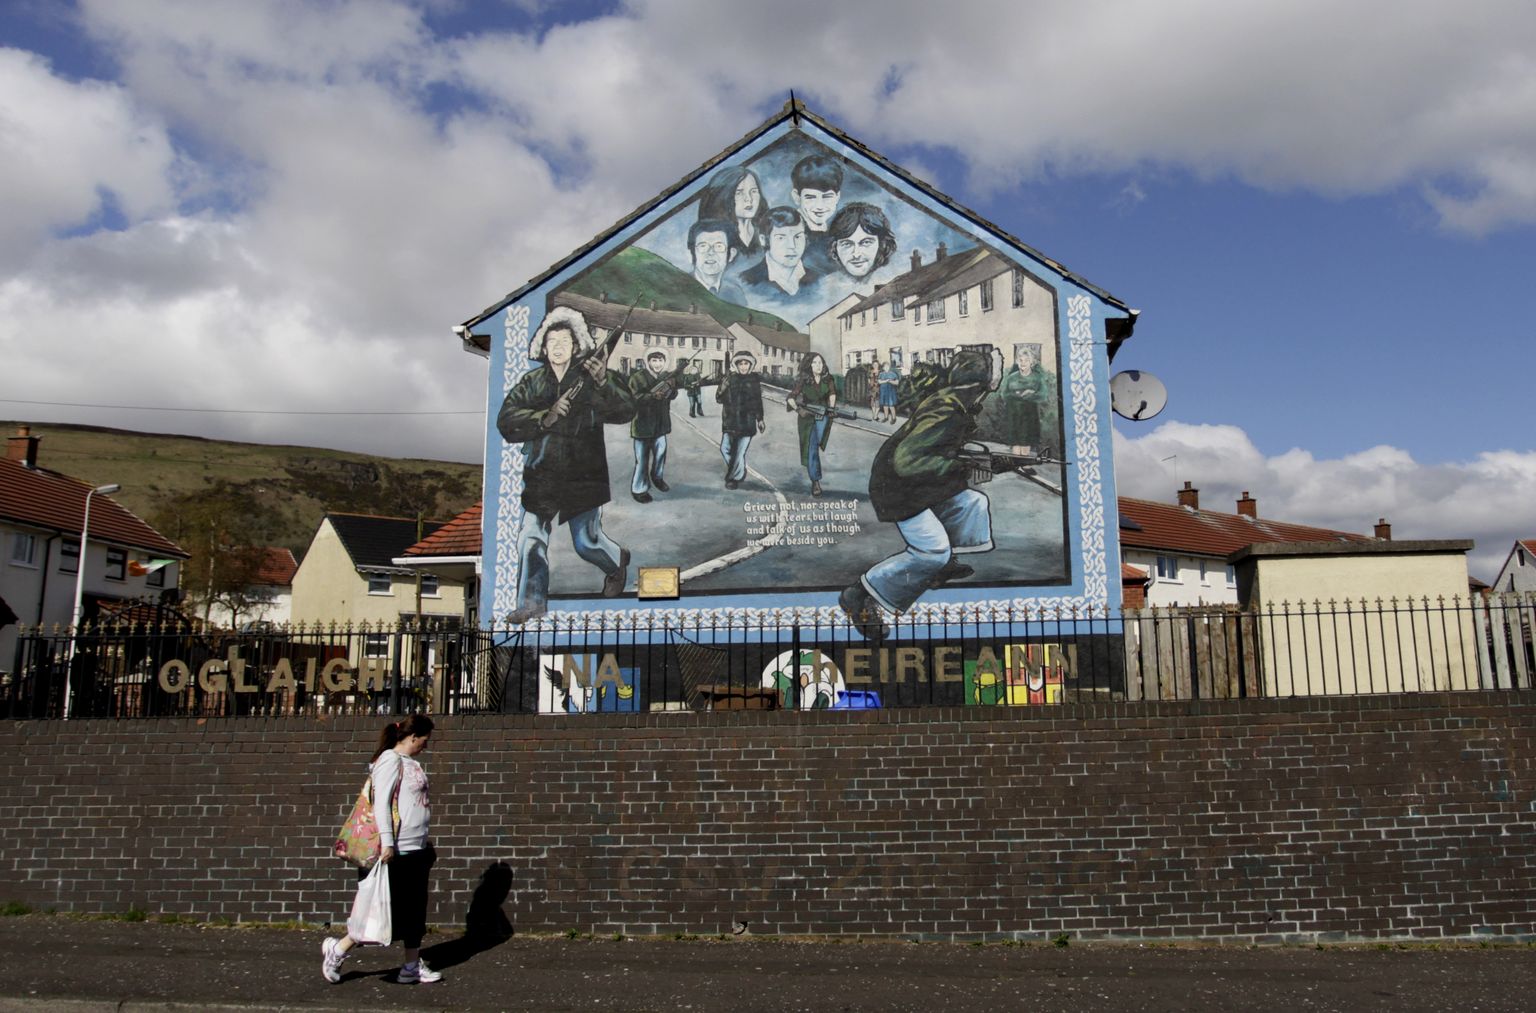 Et Belfastis on jätkuvalt kogukondi, kes elavad lausa müüridega eraldatult, tehakse vabariiklaste ja unionistide lepitamise nimel siiani tööd.